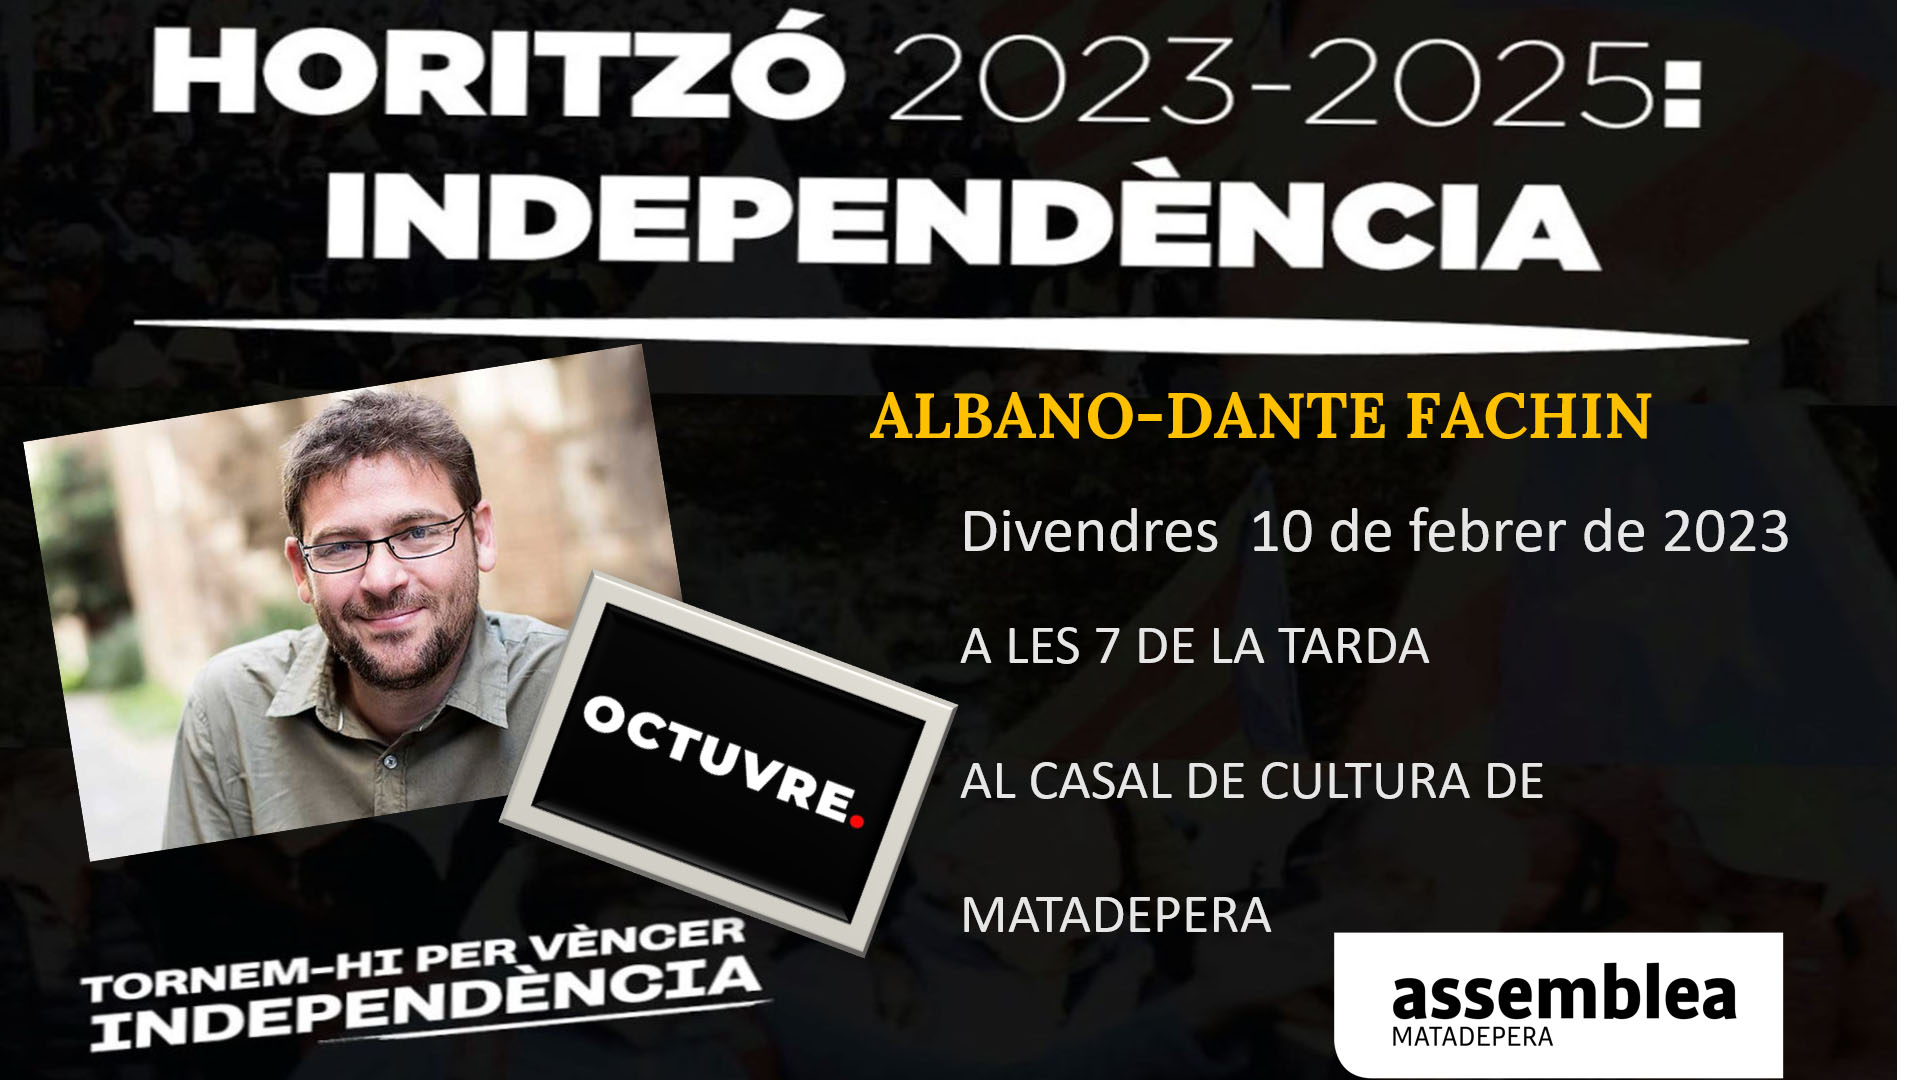 Horitzó 2023-2025: Independència // Matadepera